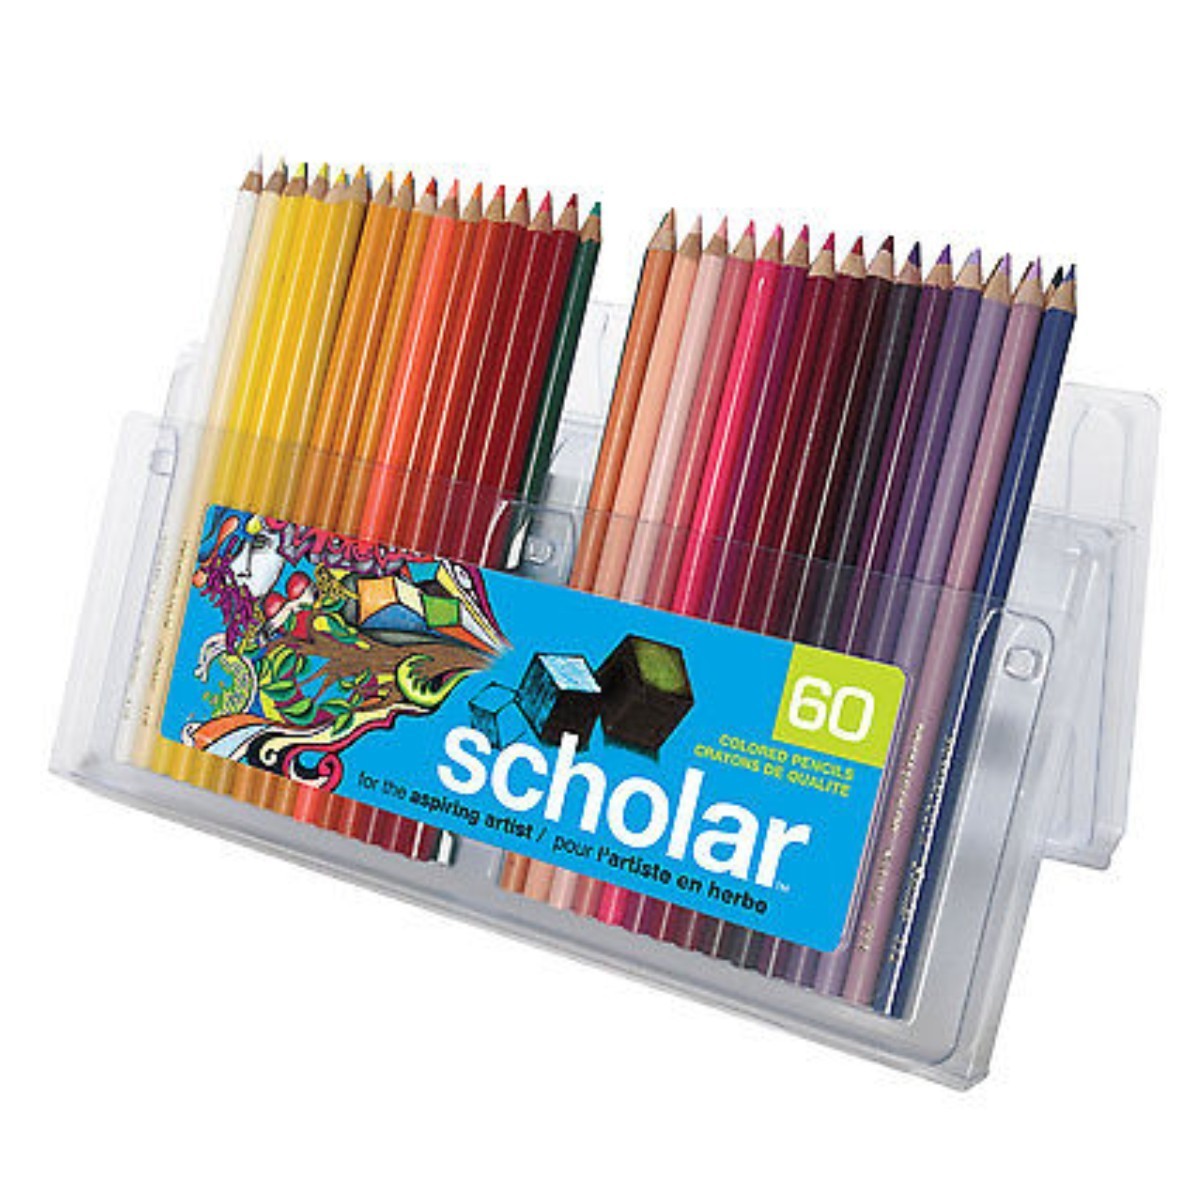 ⭐ Prismacolor Scholar por 60 Unidades Caja de Lápices de Colores